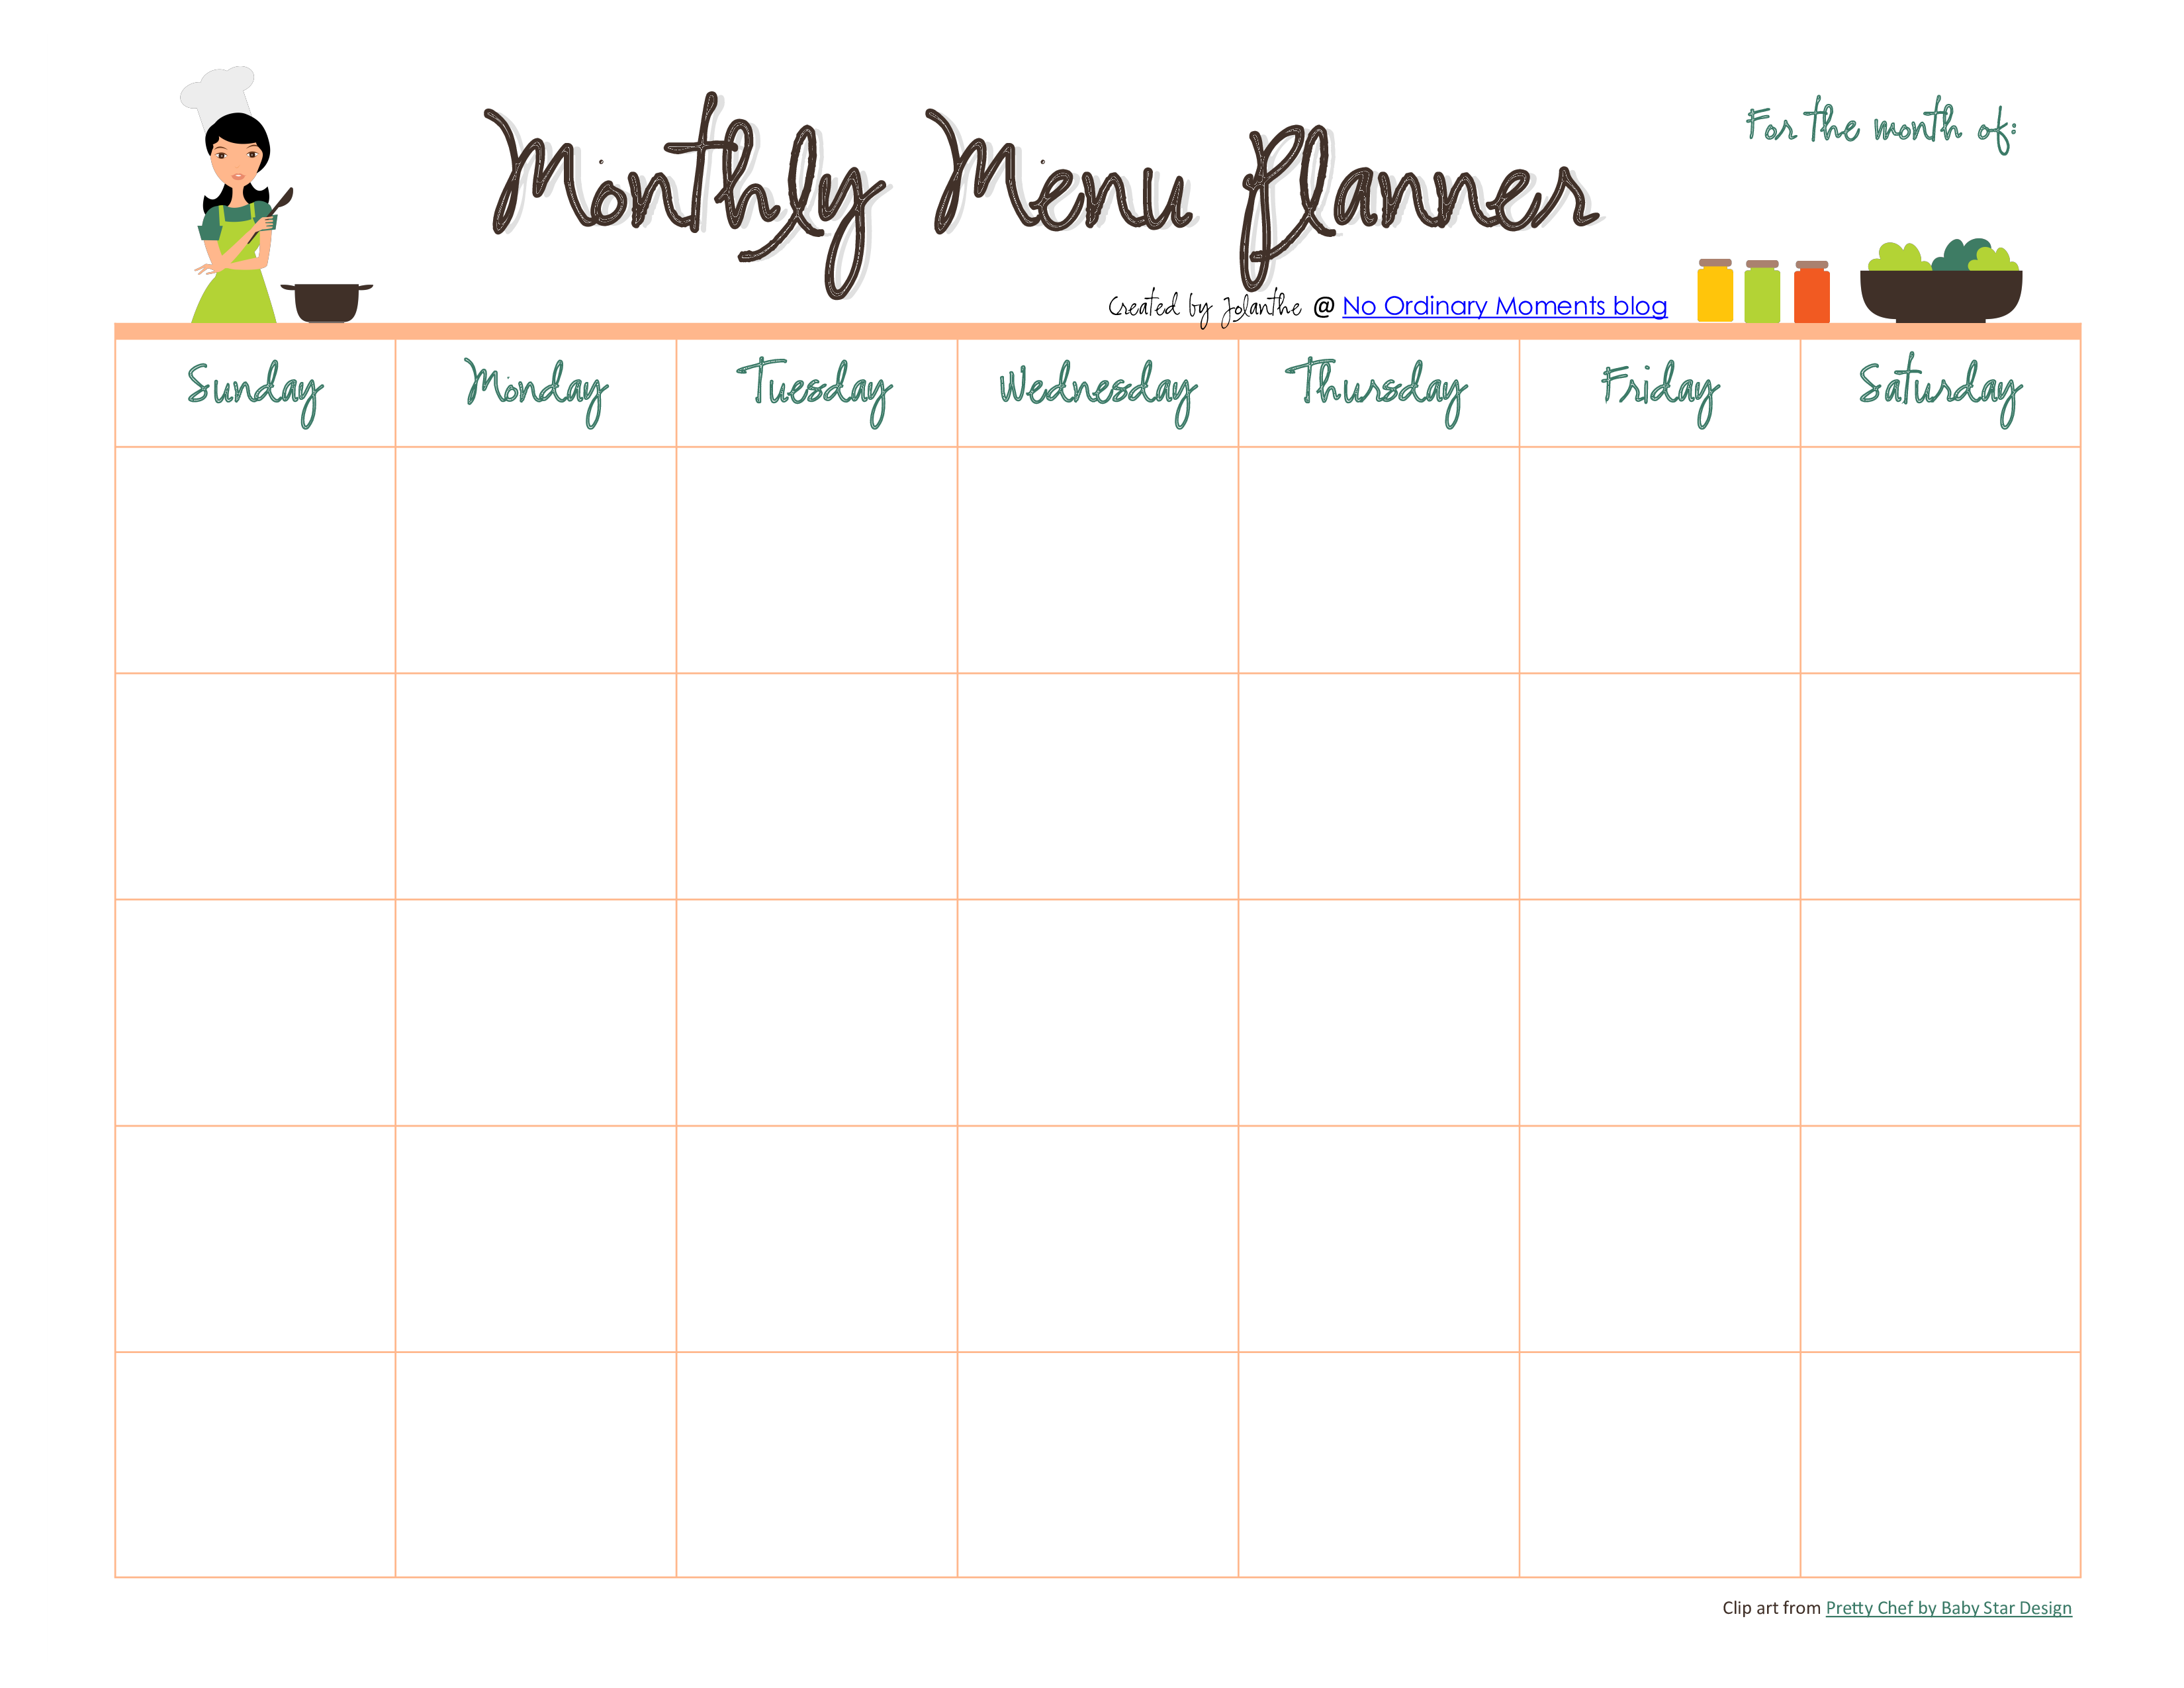 template printable weekly meal planner